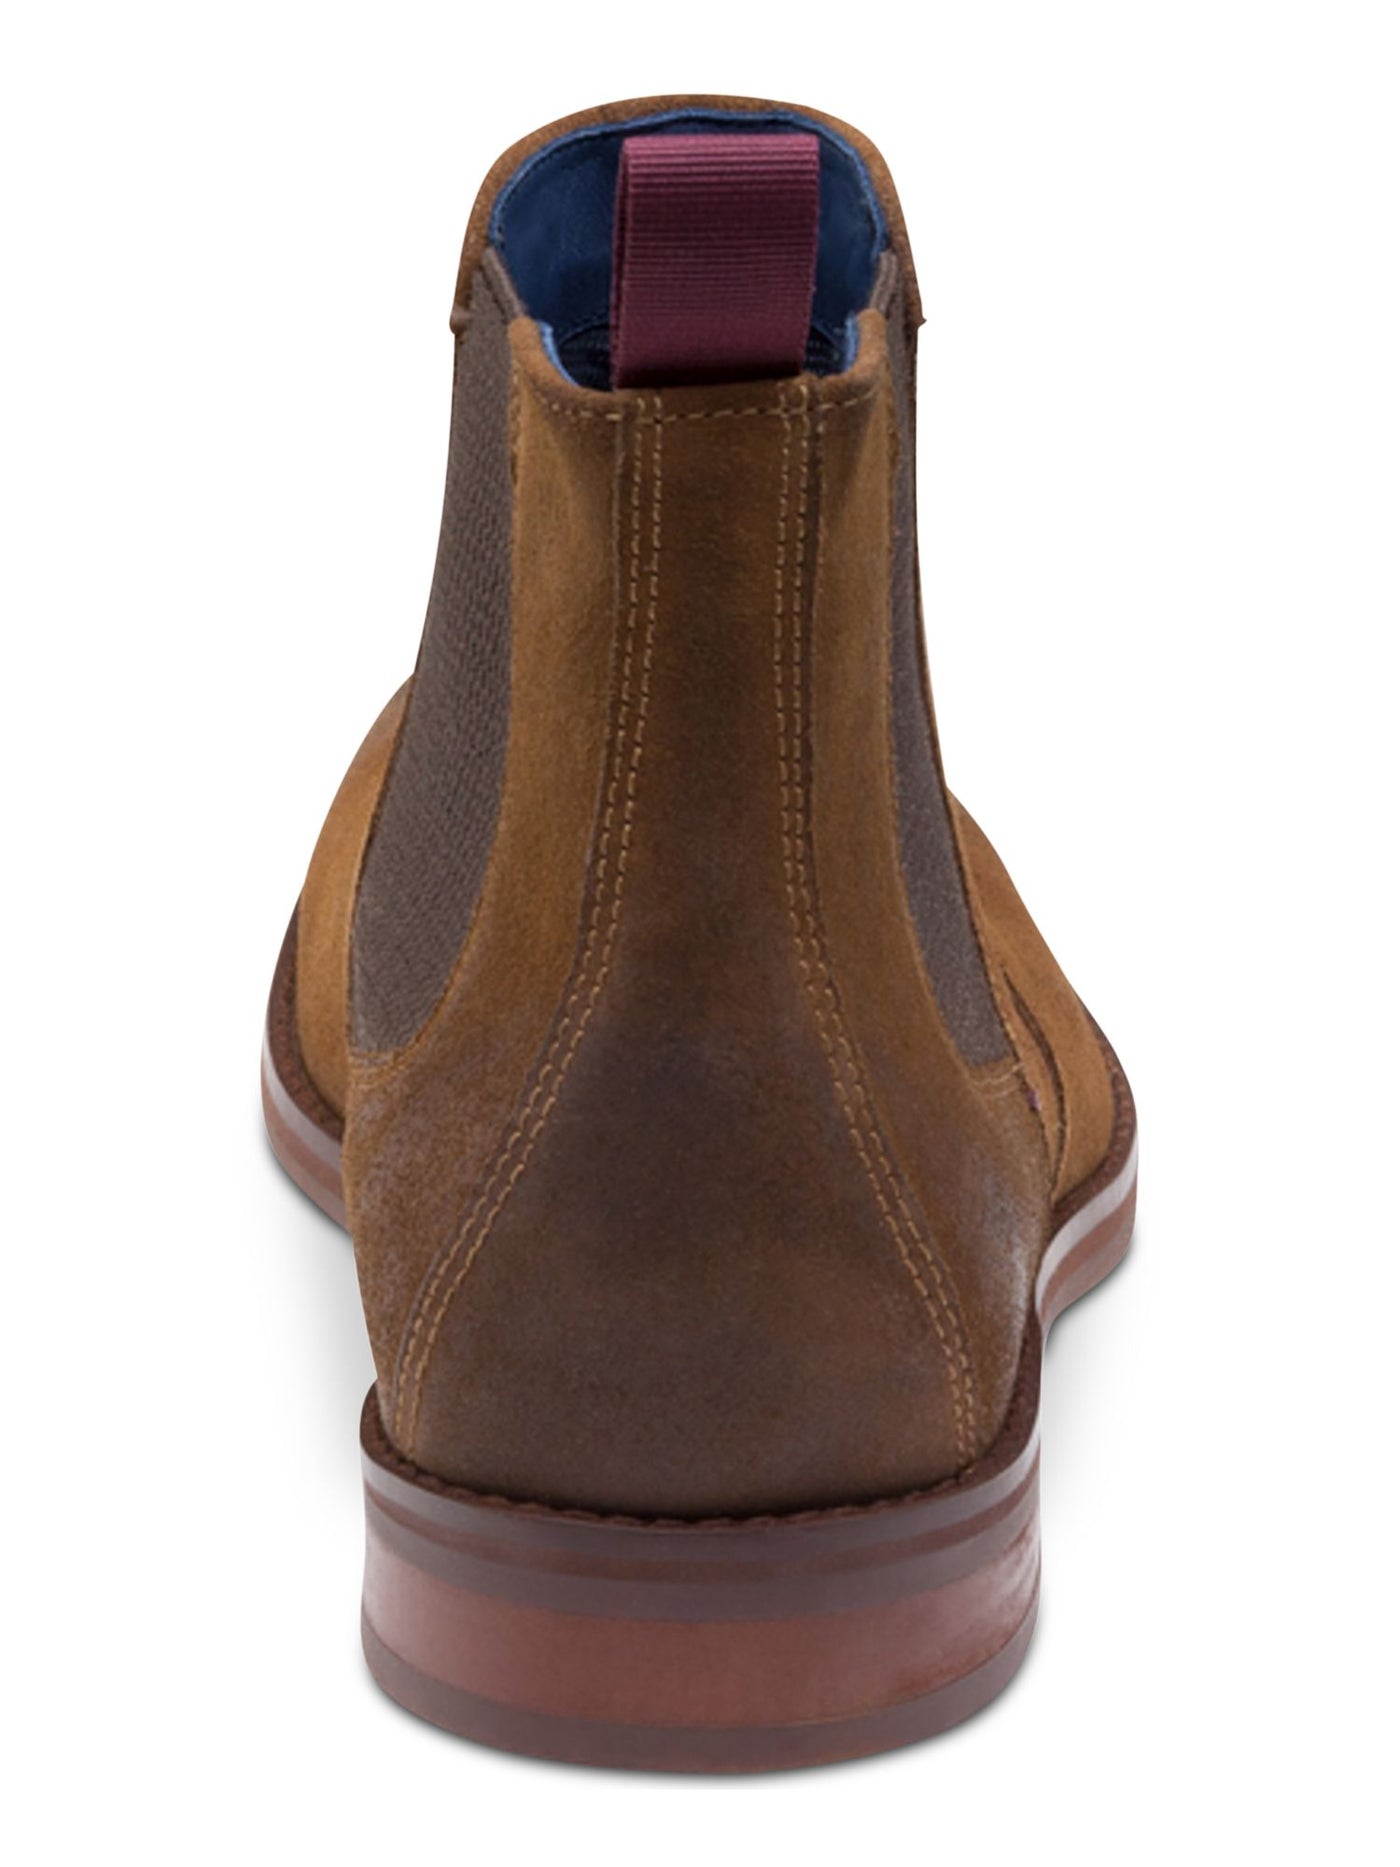 JOHNSTON & MURPHY Mens Brown Goring Comfort Danby Round Toe Block Heel Suede Boots 8.5 M